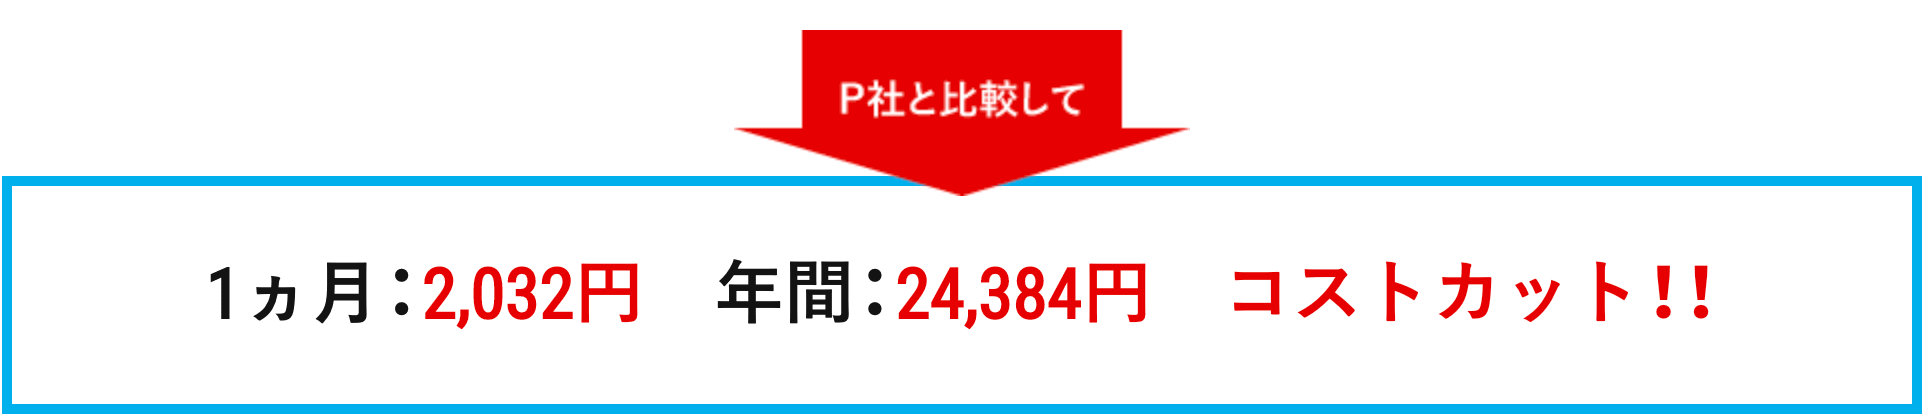 P社と比較して 1ヵ月:2，032円　年間:24,384円　コストカット!!